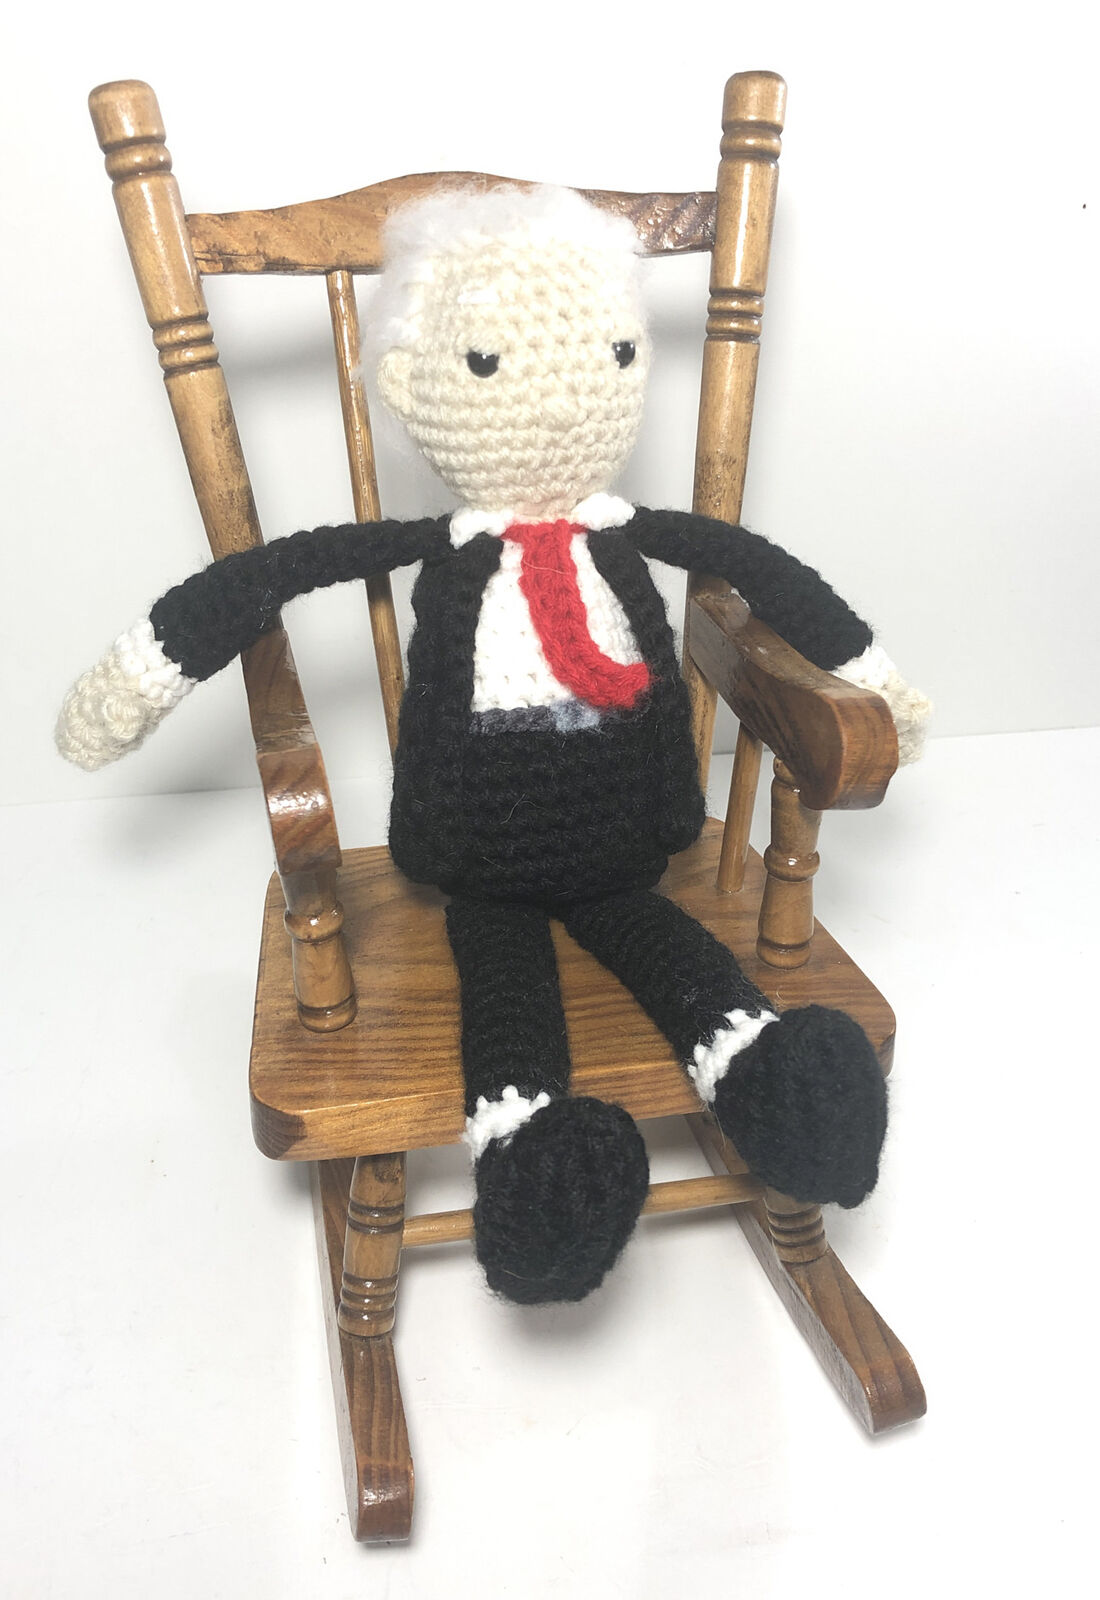 Sleepy Joe Biden In Rocking Chair 11” Knit Crochet Plush Figure- The President.